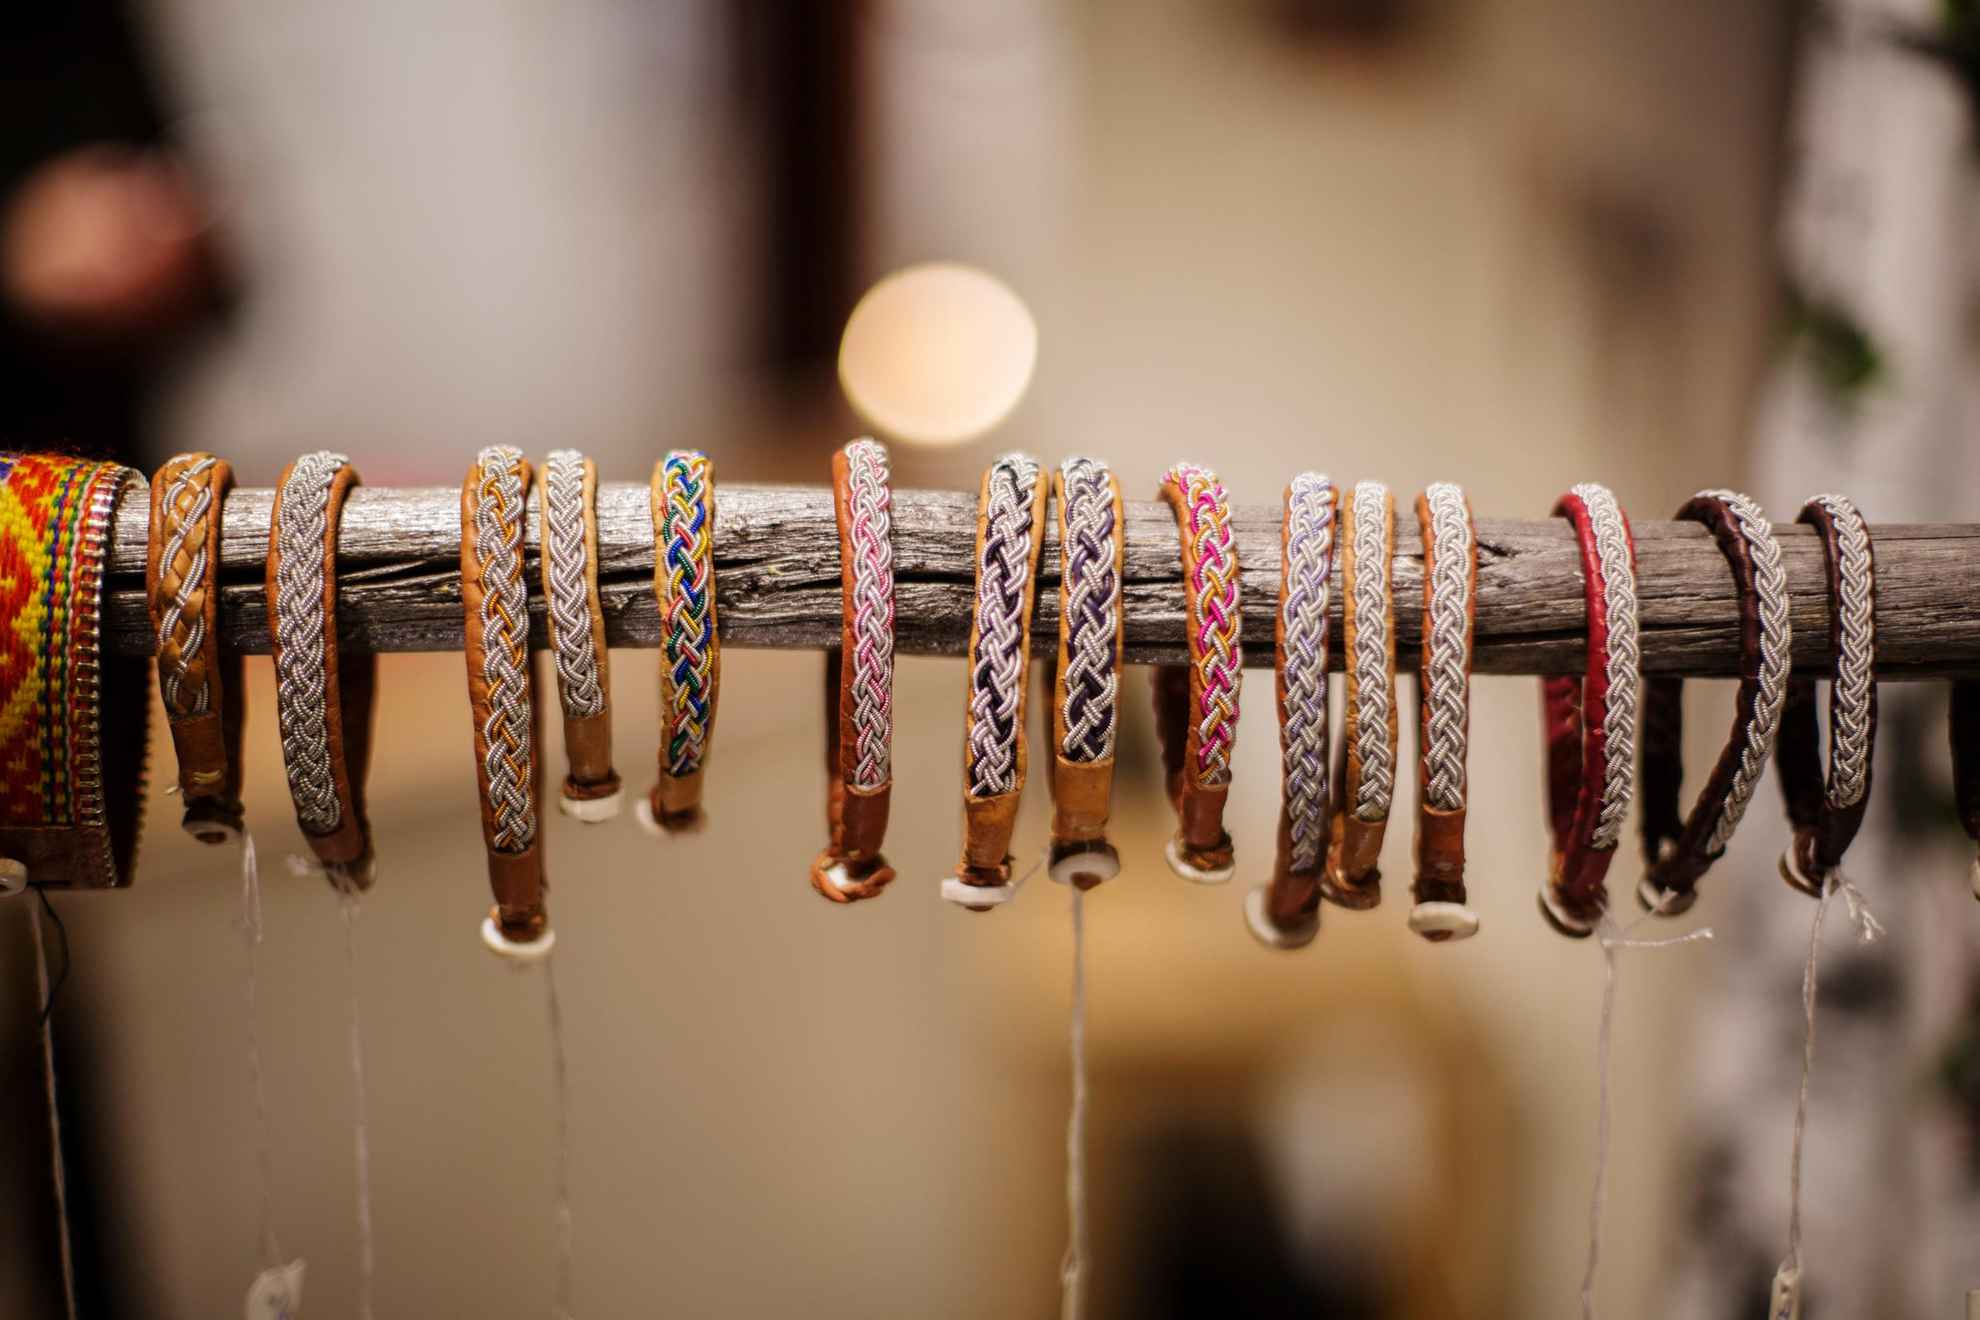 Talrijke armbanden van rendierleer en tindraad, hangend aan een lange stok.